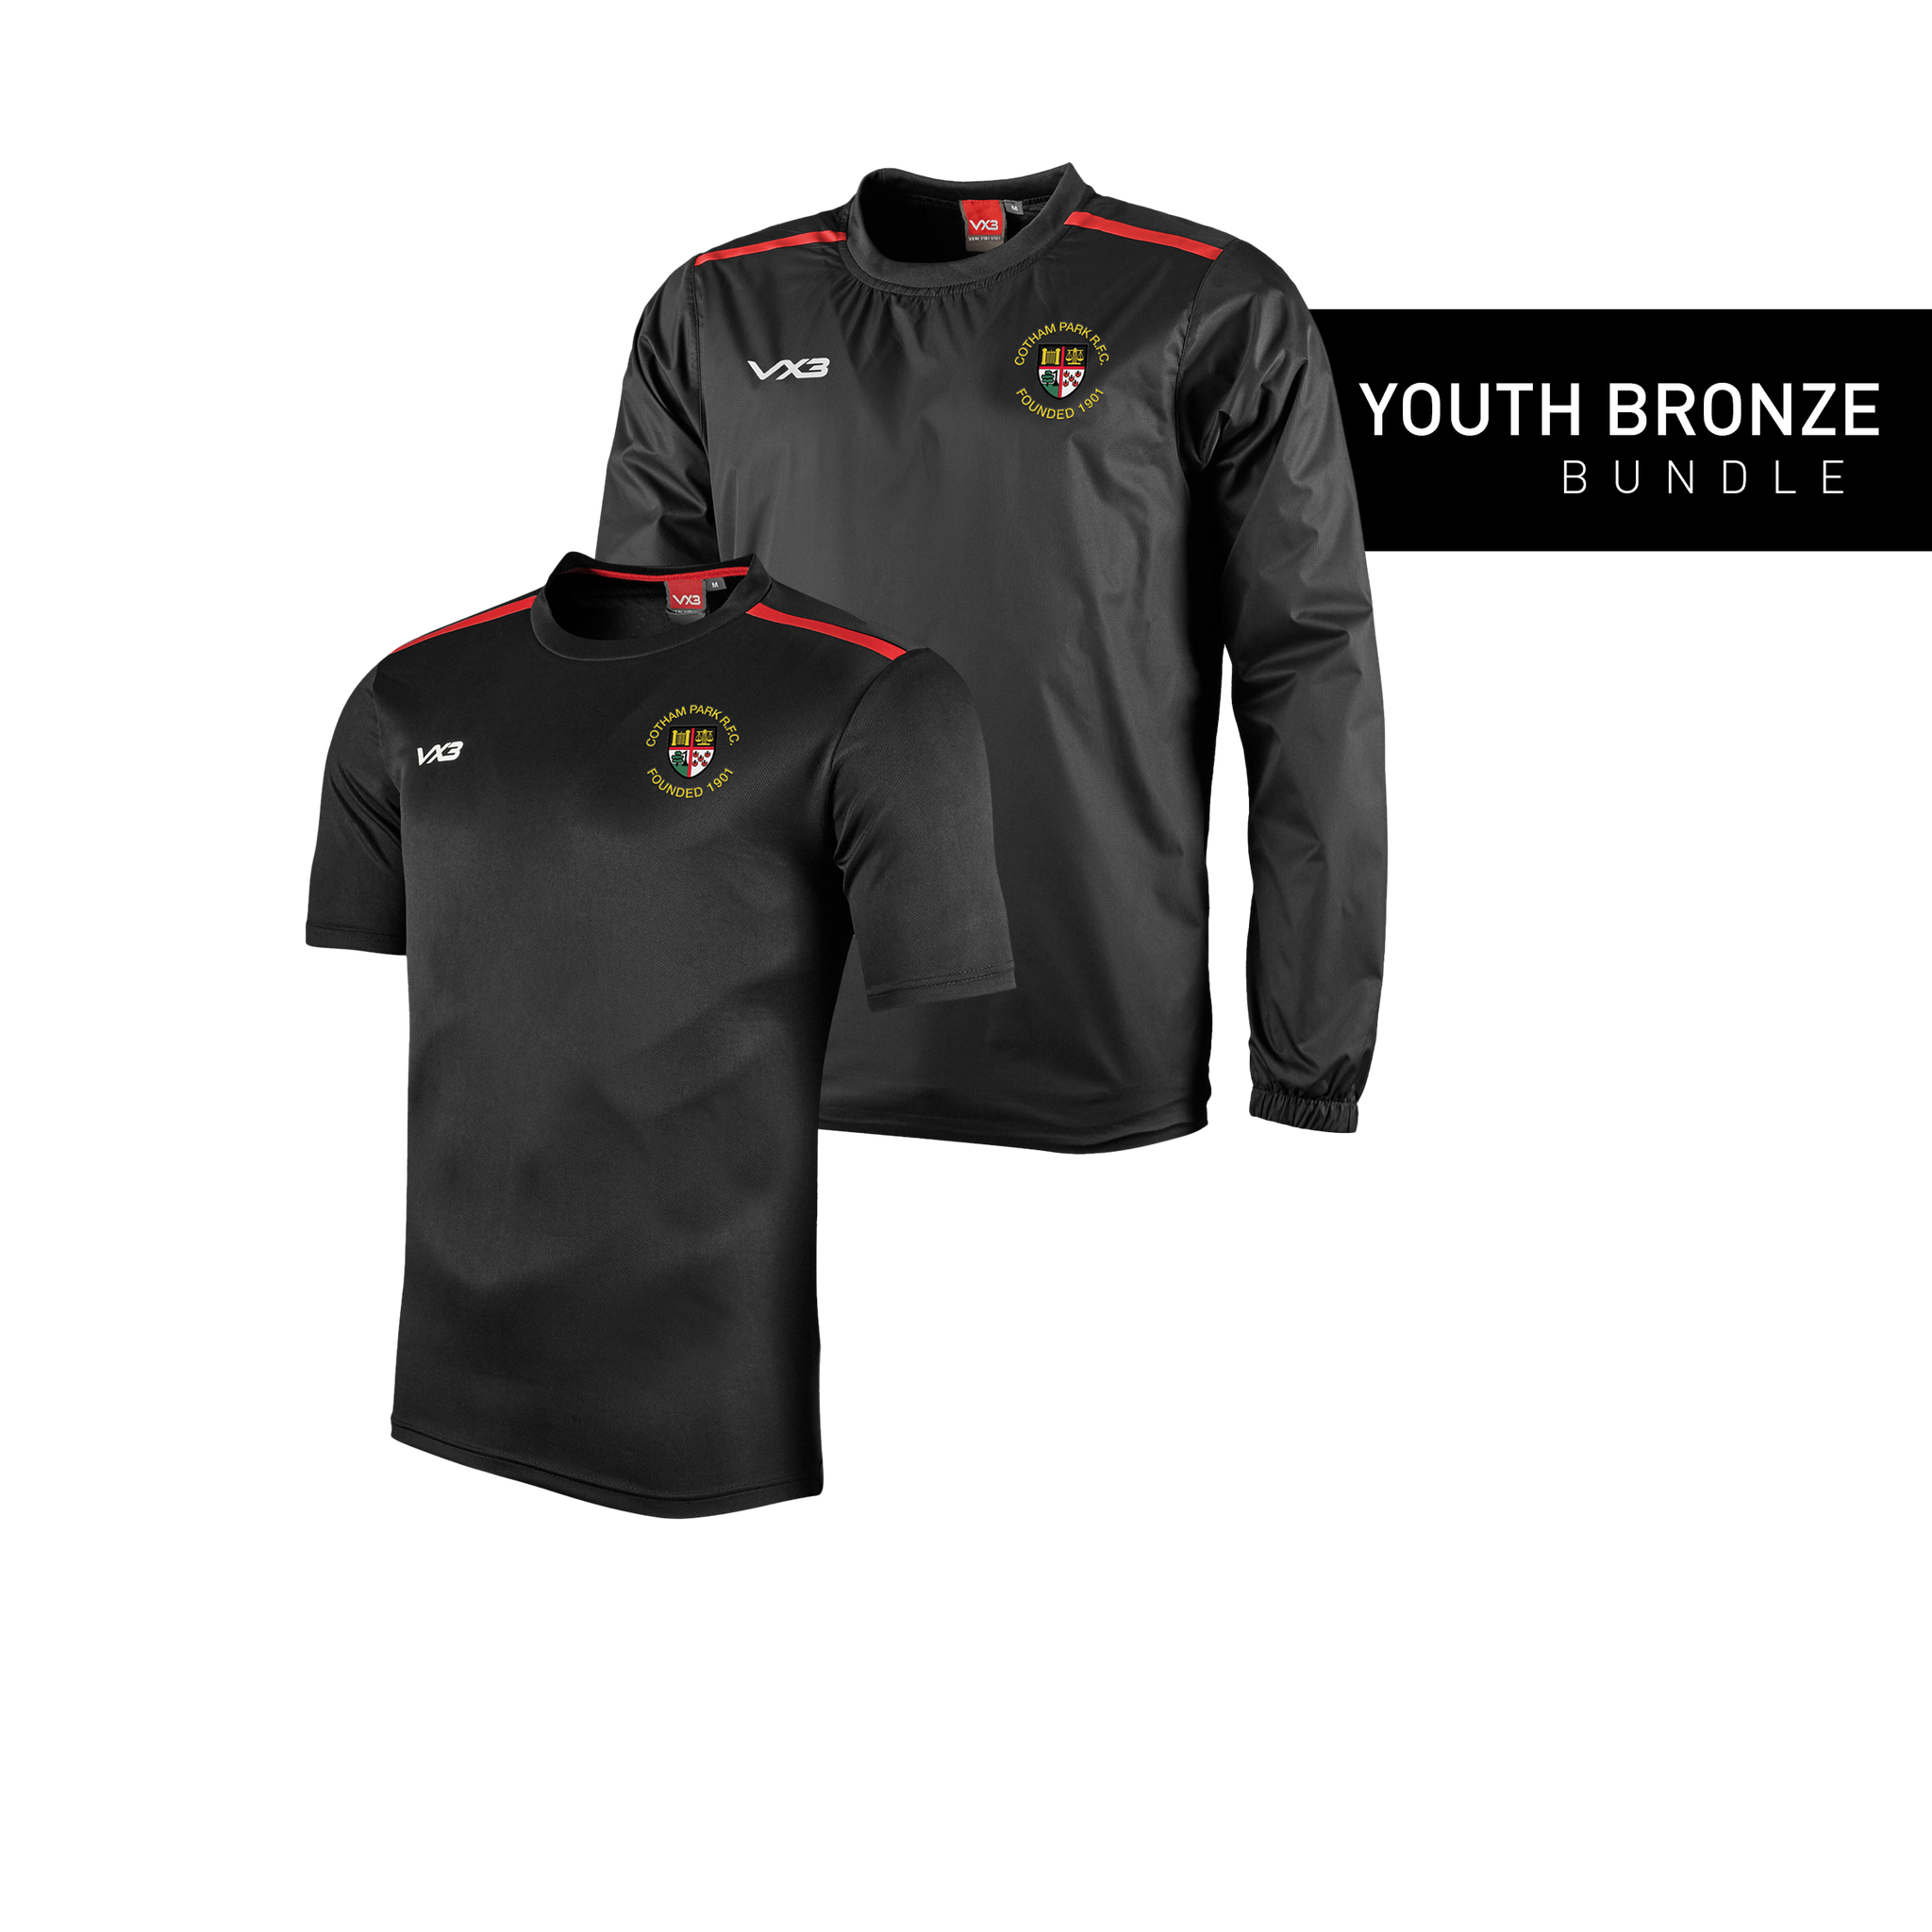 Cotham Park RFC Youth Bronze Bundle